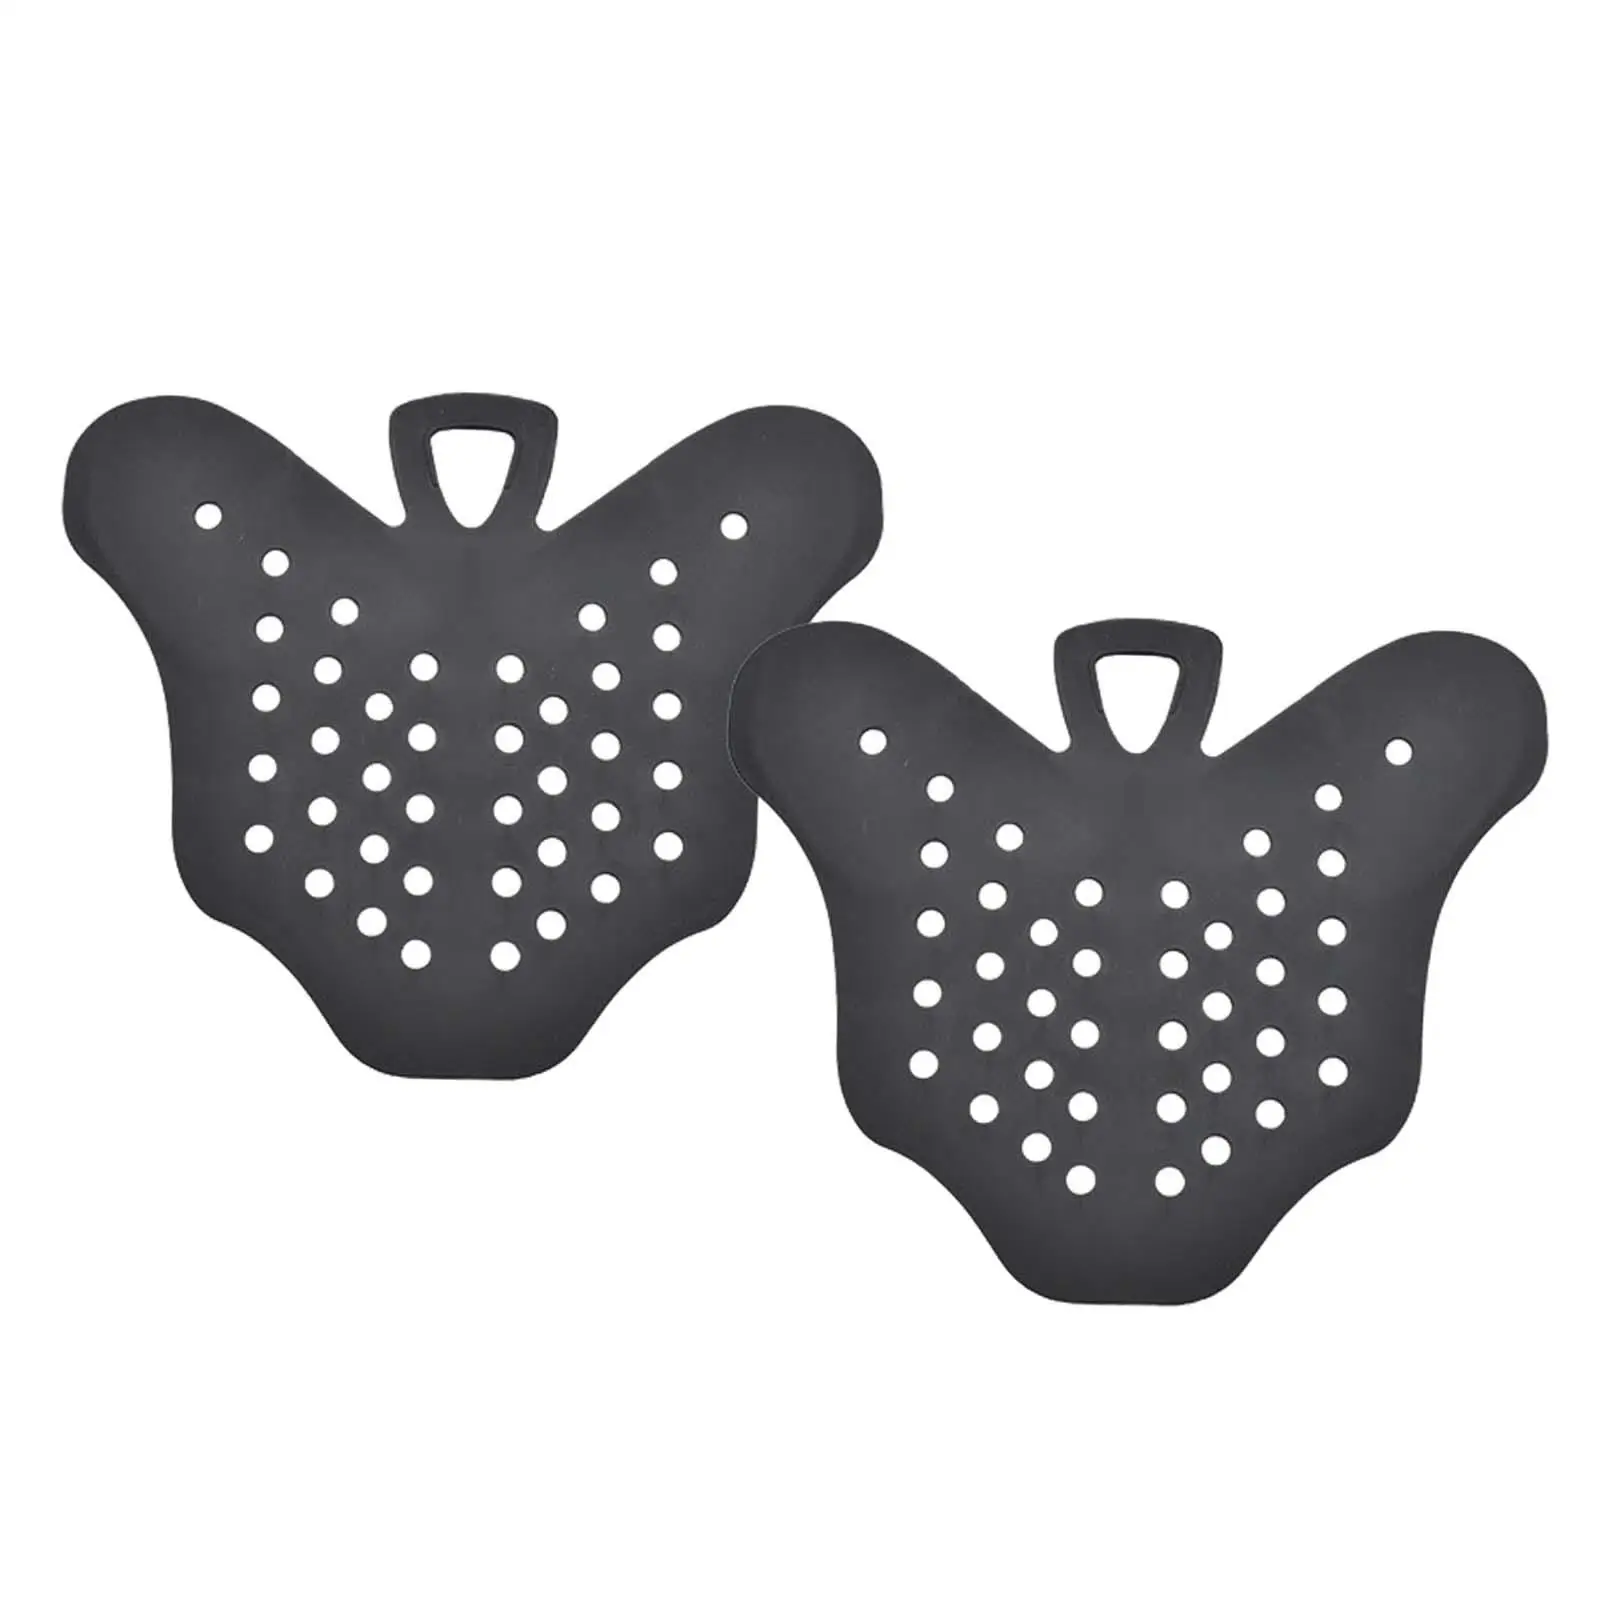 Flip Fin Holder Practical Diving Fins Shoes Support for Sports Swim Men